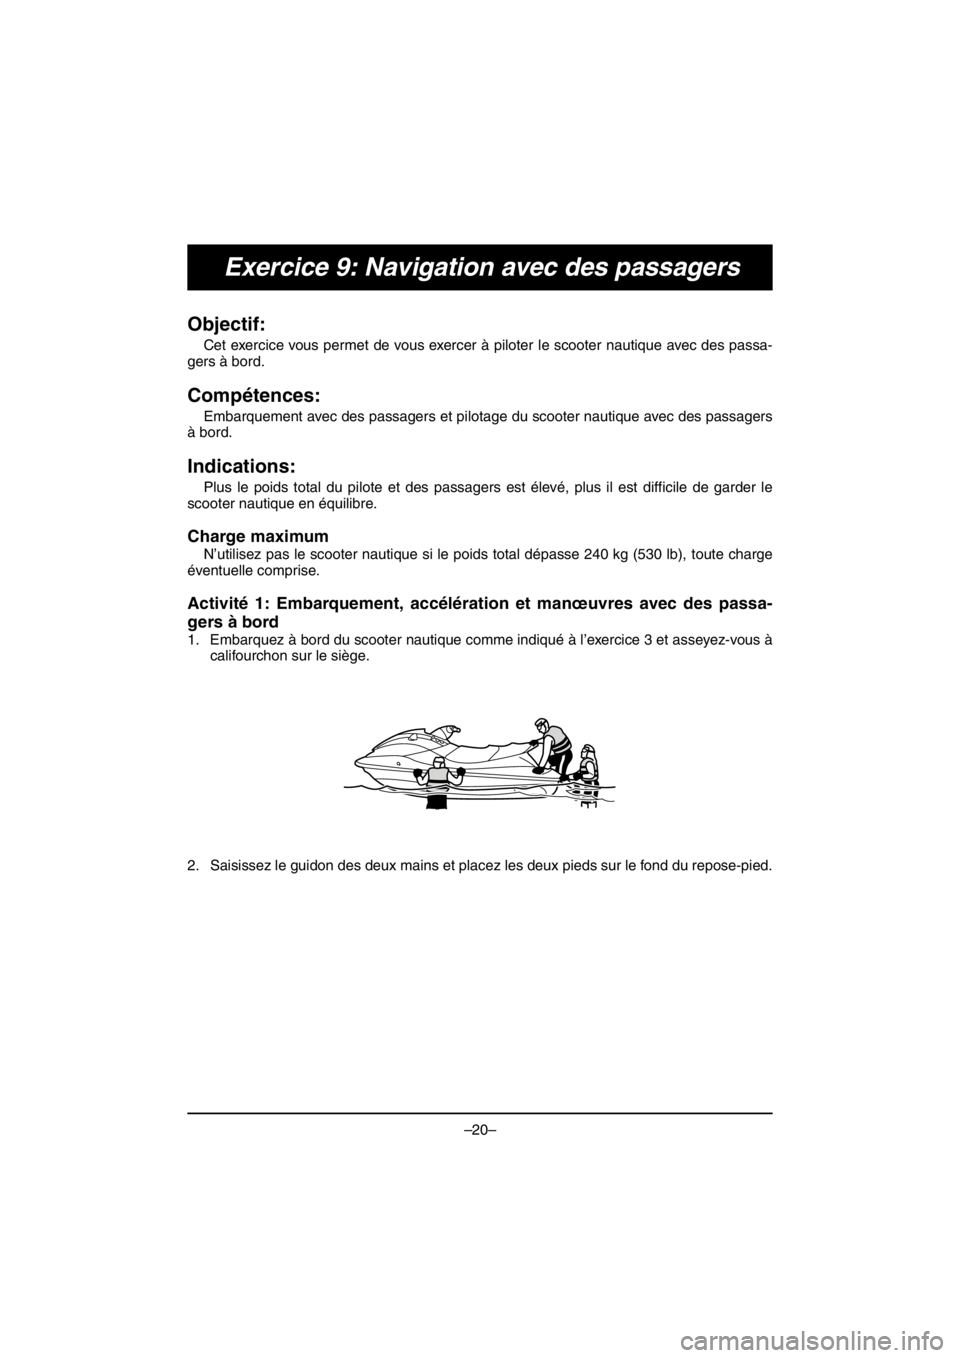 YAMAHA V1 2016  Notices Demploi (in French) –20–
Exercice 9: Navigation avec des passagers
Objectif: 
Cet exercice vous permet de vous exercer à piloter le scooter nautique avec des passa-
gers à bord.
Compétences: 
Embarquement avec des